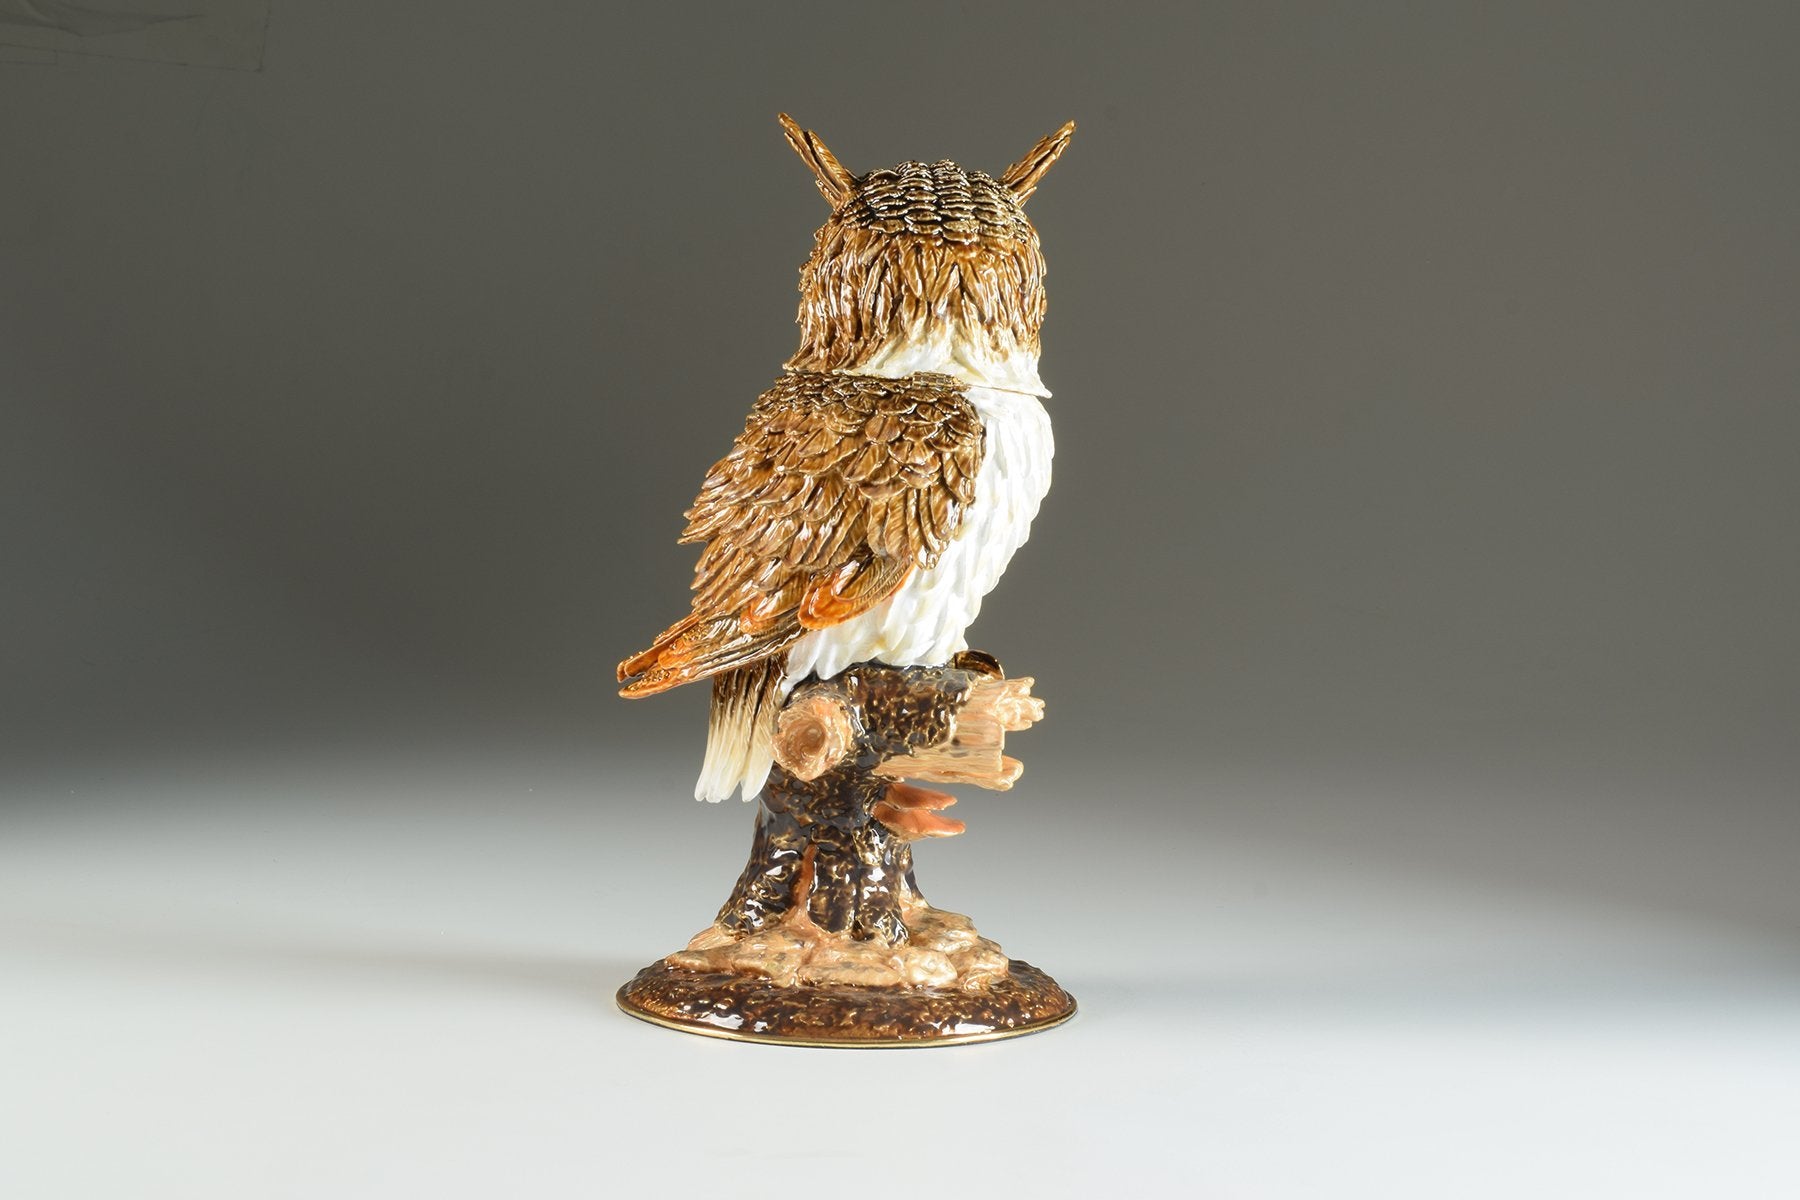 Keren Kopal Large Brown Owl trinket box 466.50